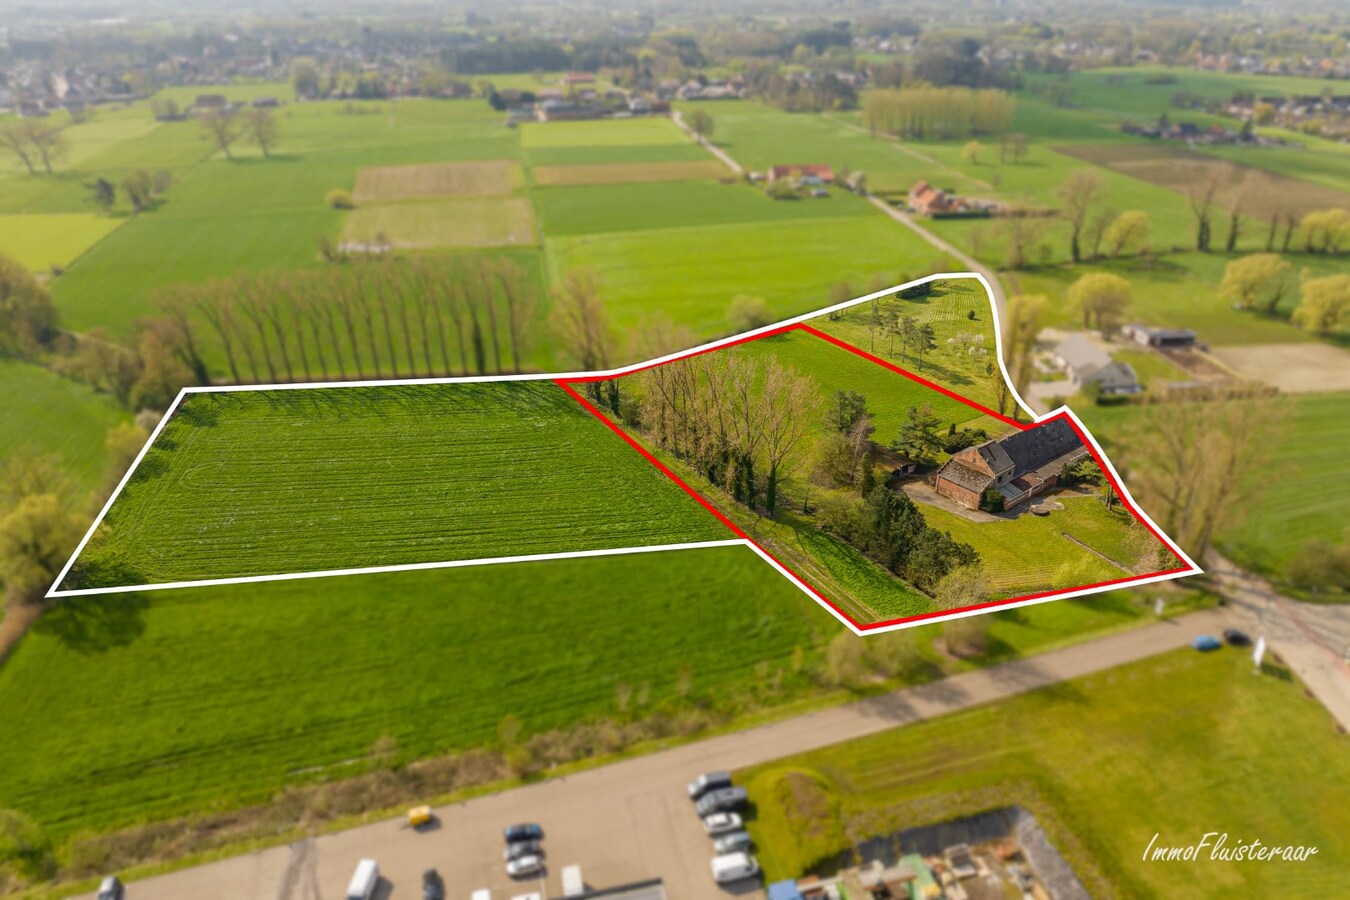 Property for sale in Heist-op-den-Berg